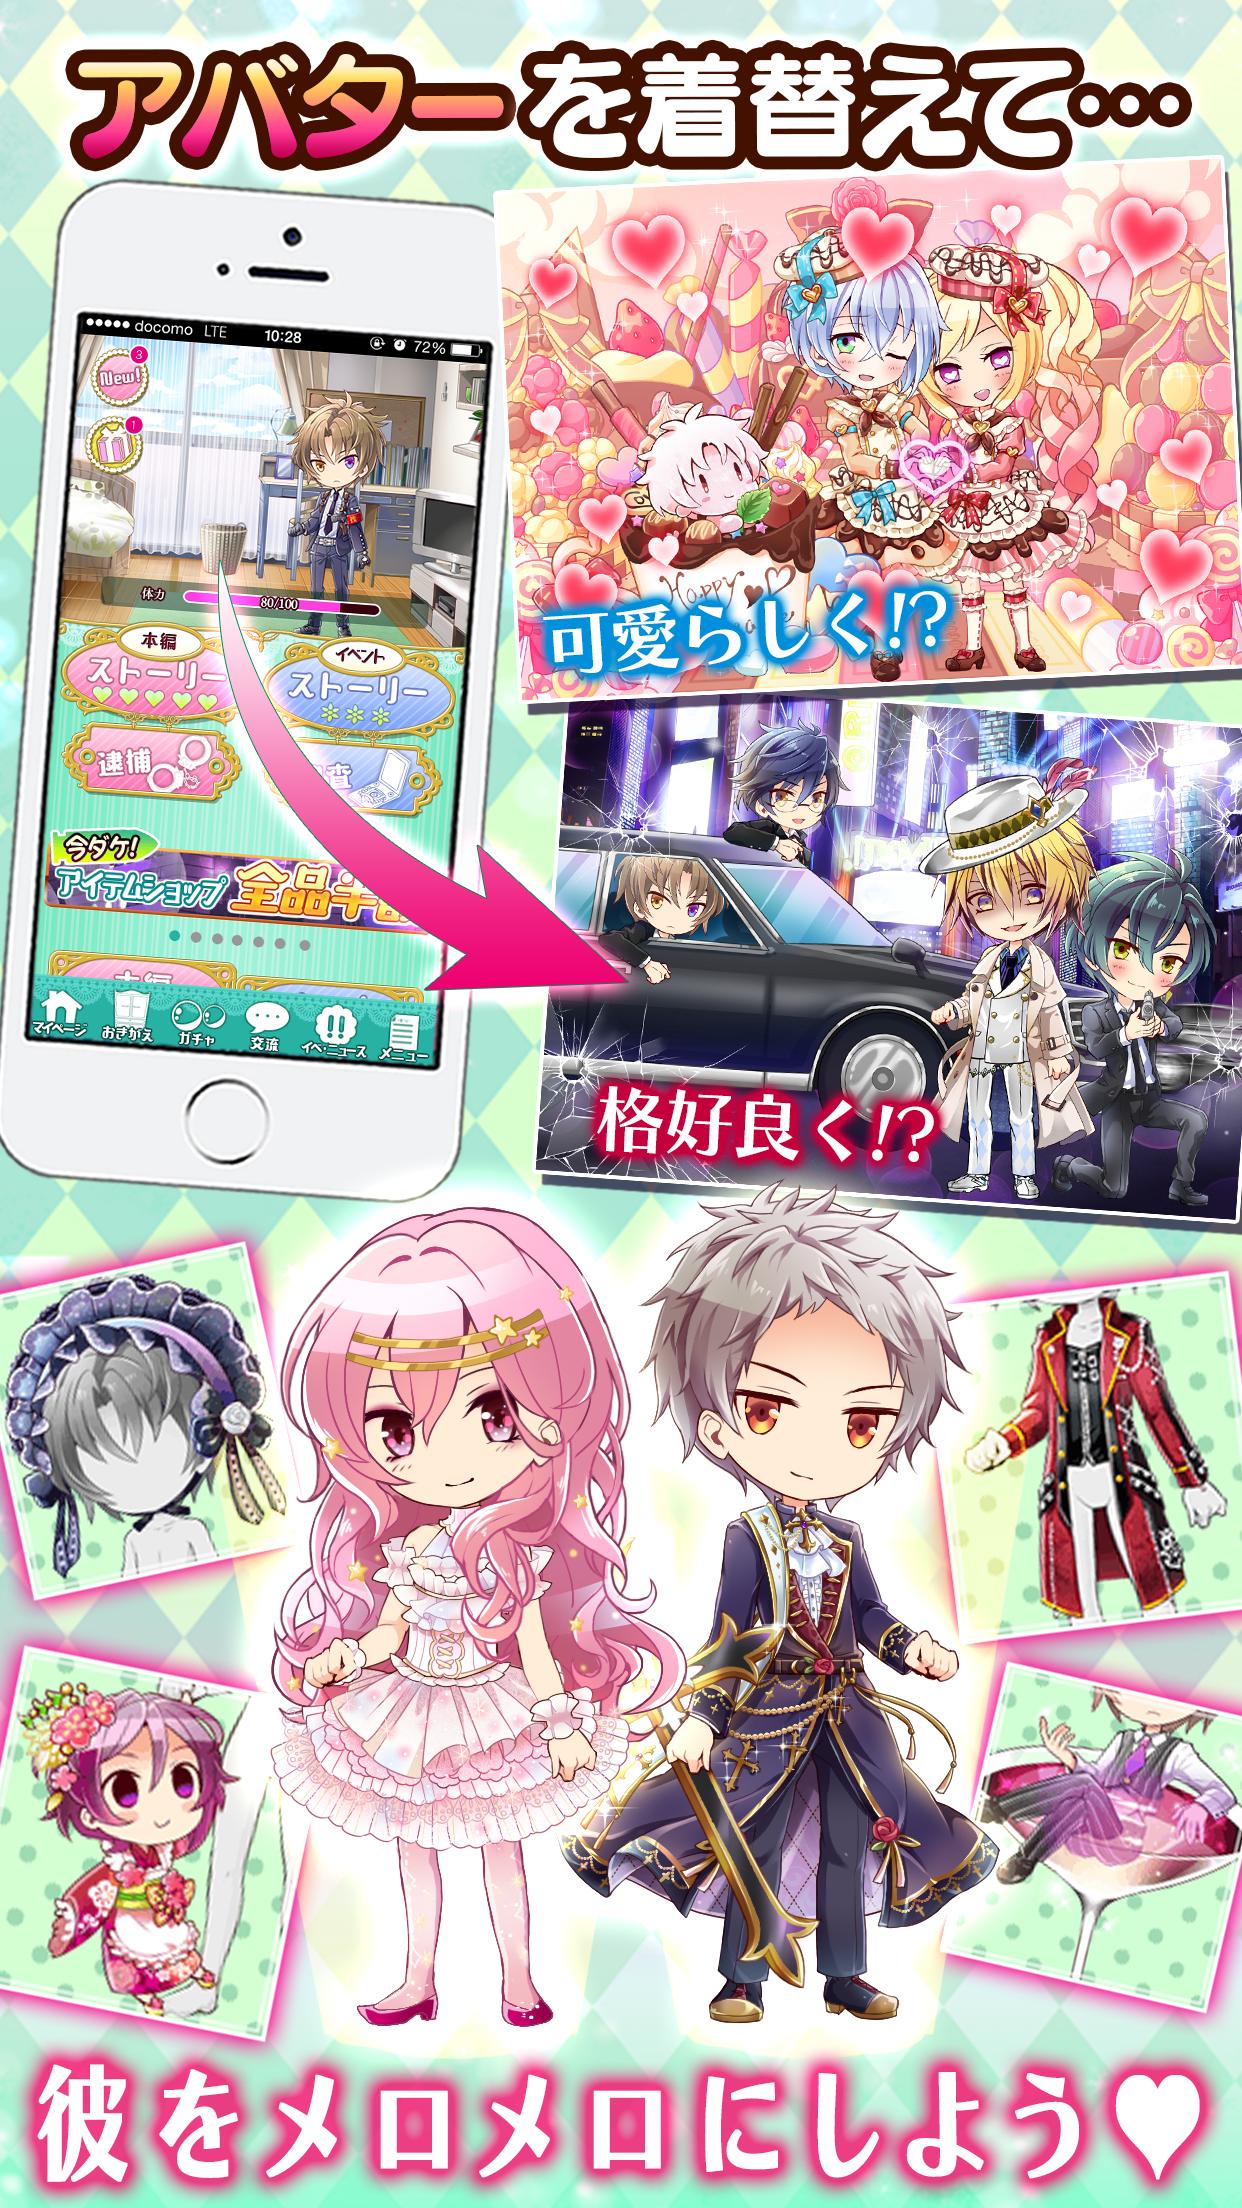 イケメン刑事 Bl ブラプリ 女性向け恋愛ゲーム無料ゲーム For Android Apk Download